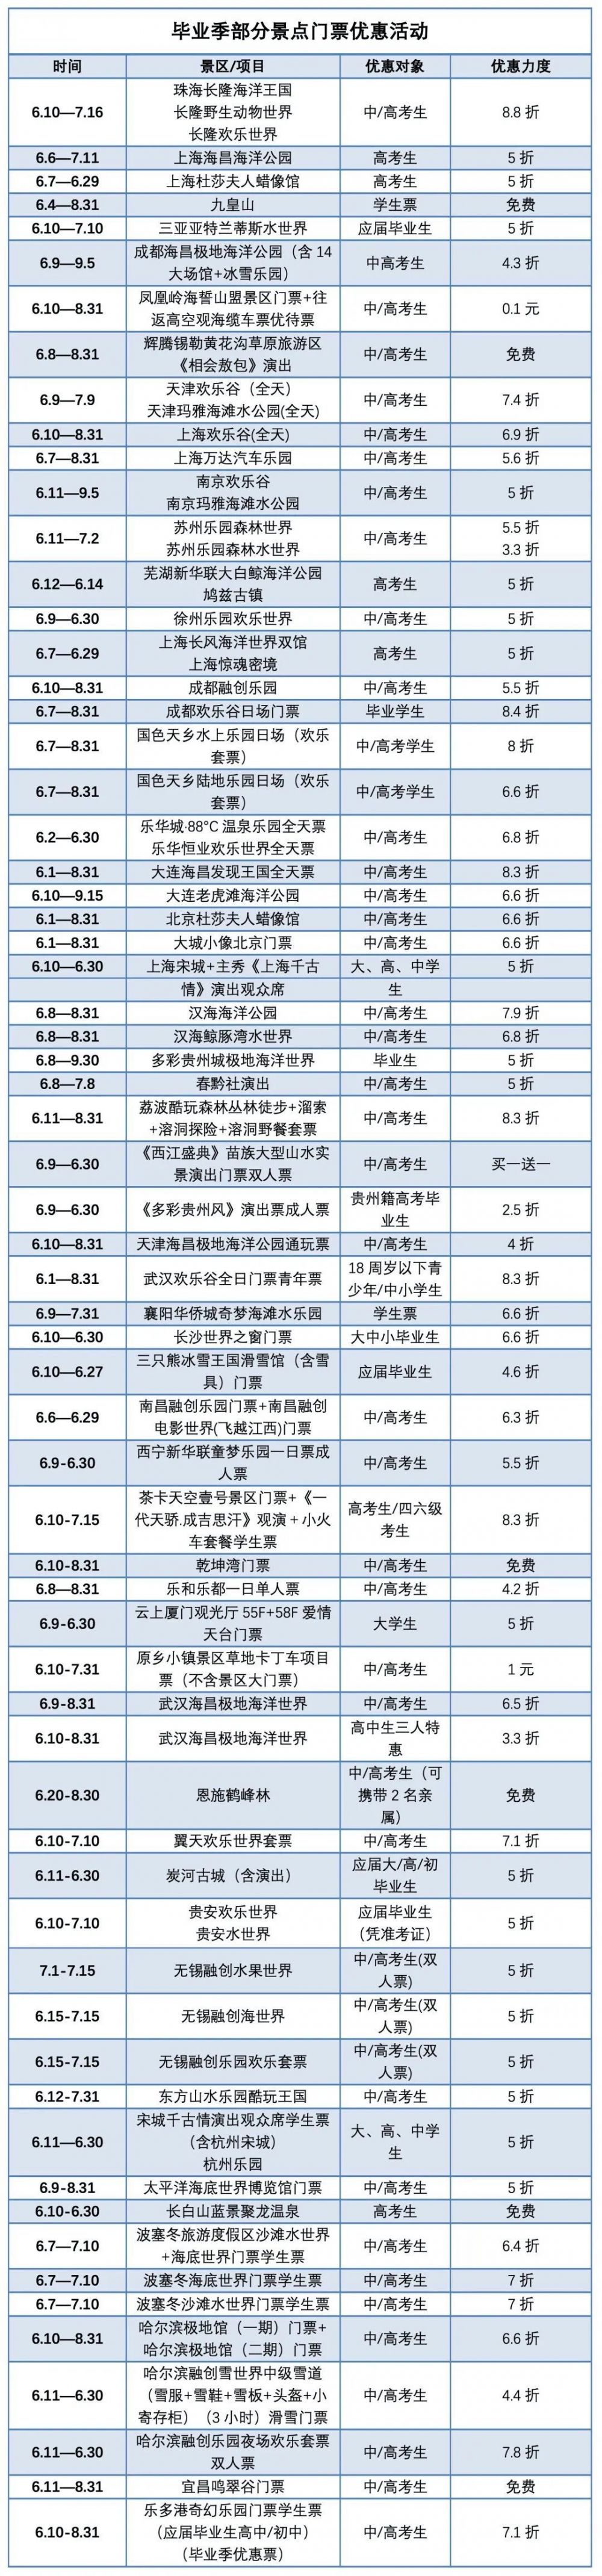 毛不易|“毕业旅行”搜索量环比上涨120% 上海、重庆等城市受青睐